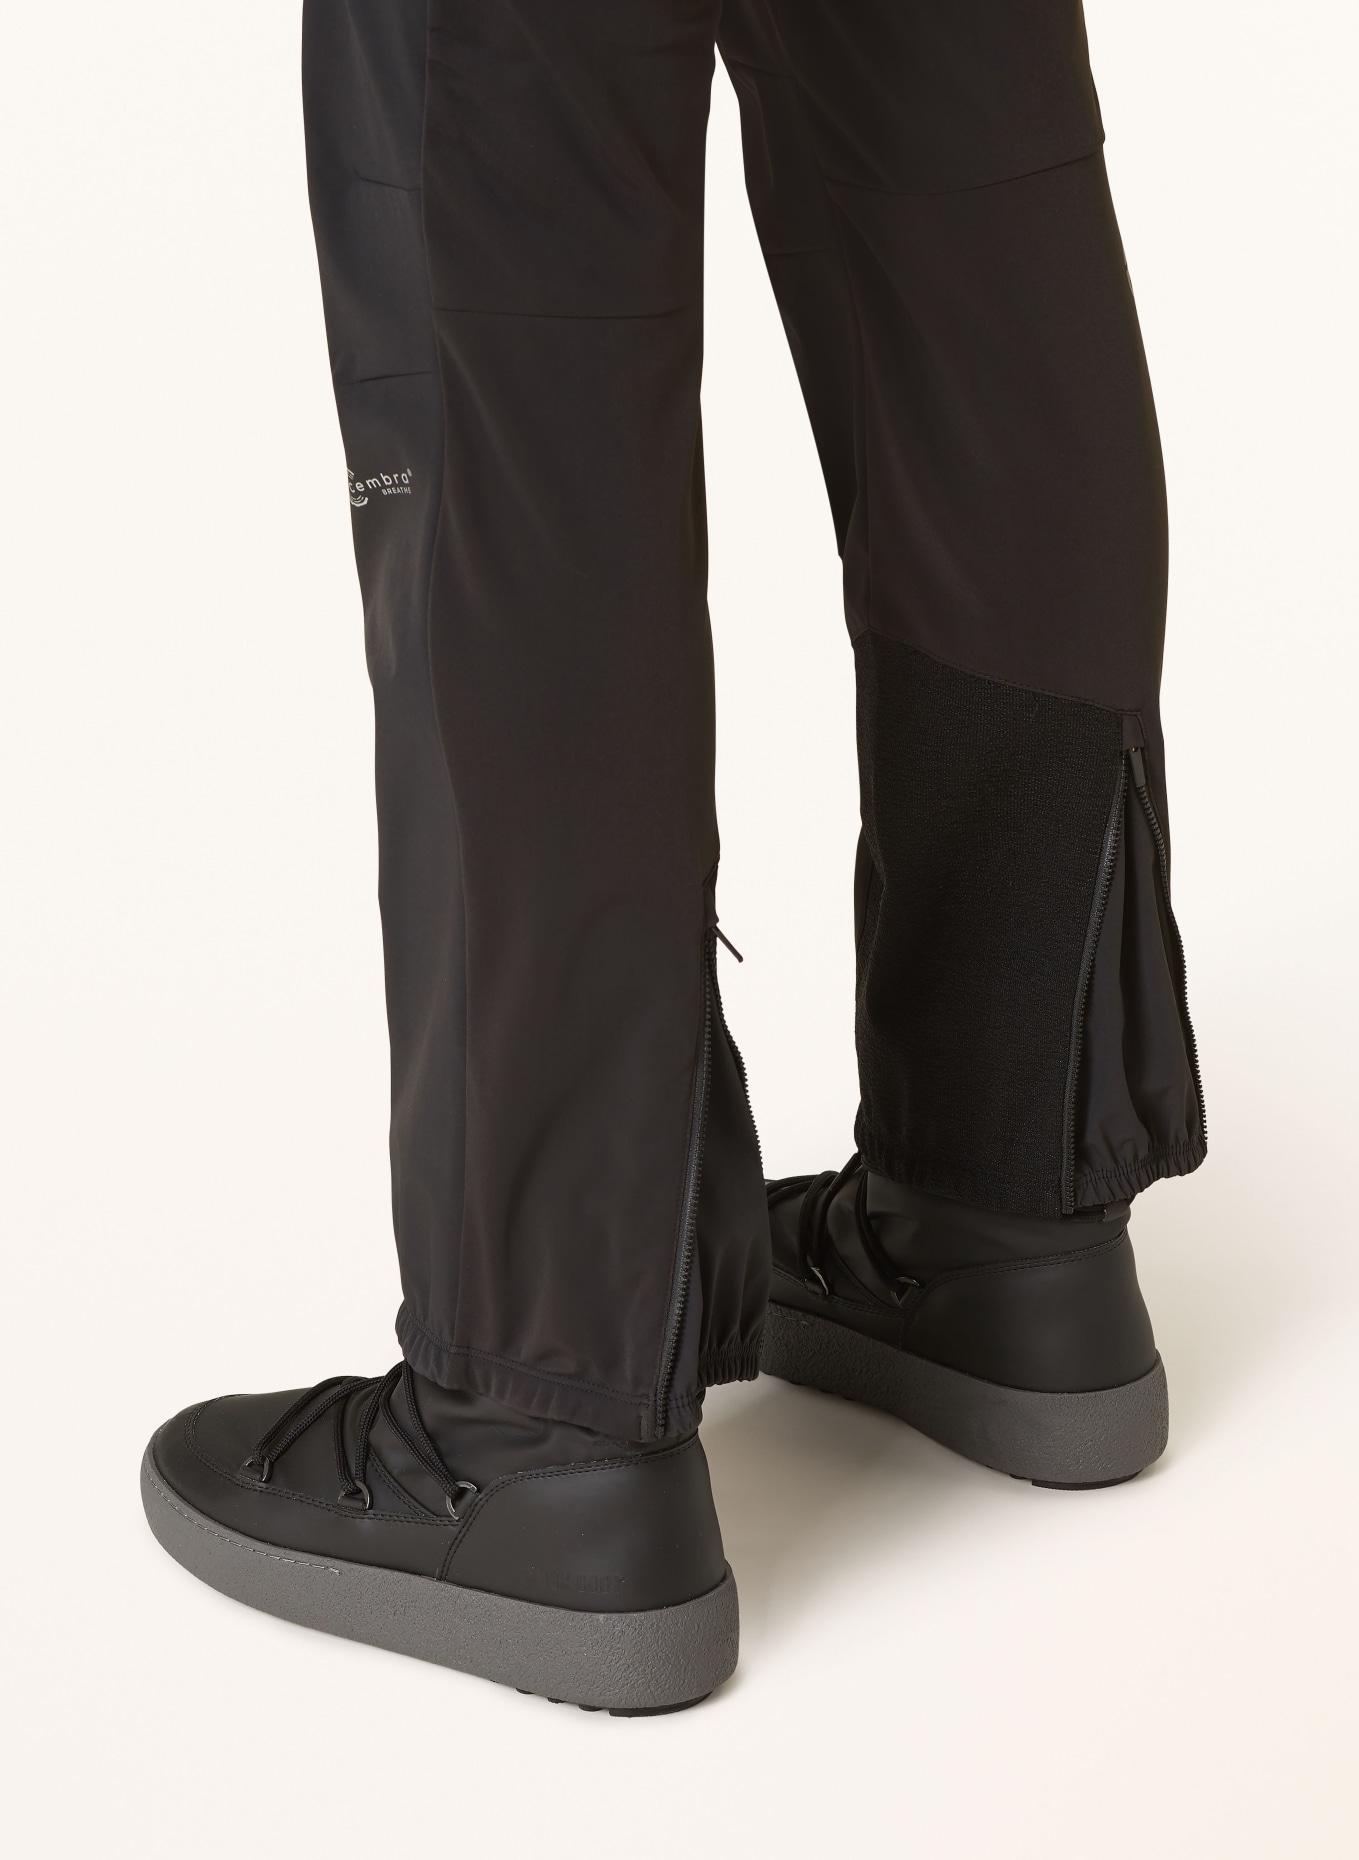 maloja Ski pants SCHNEEFINKM., Color: BLACK (Image 6)